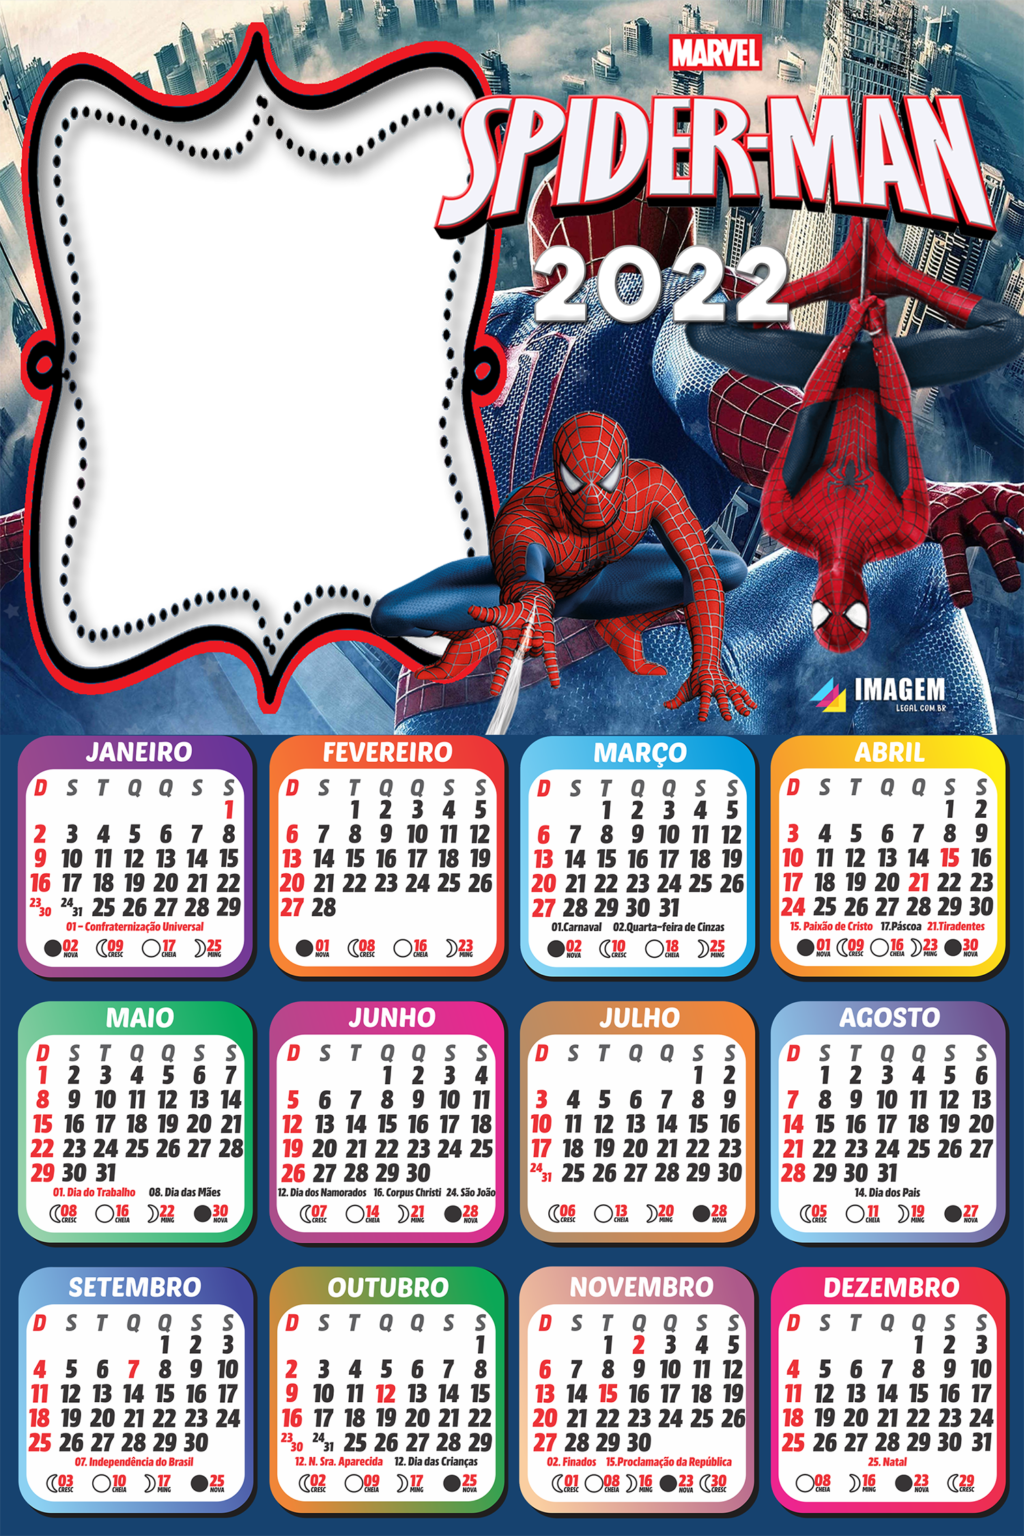 O Espetacular Homem-Aranha nº 25 (2021)